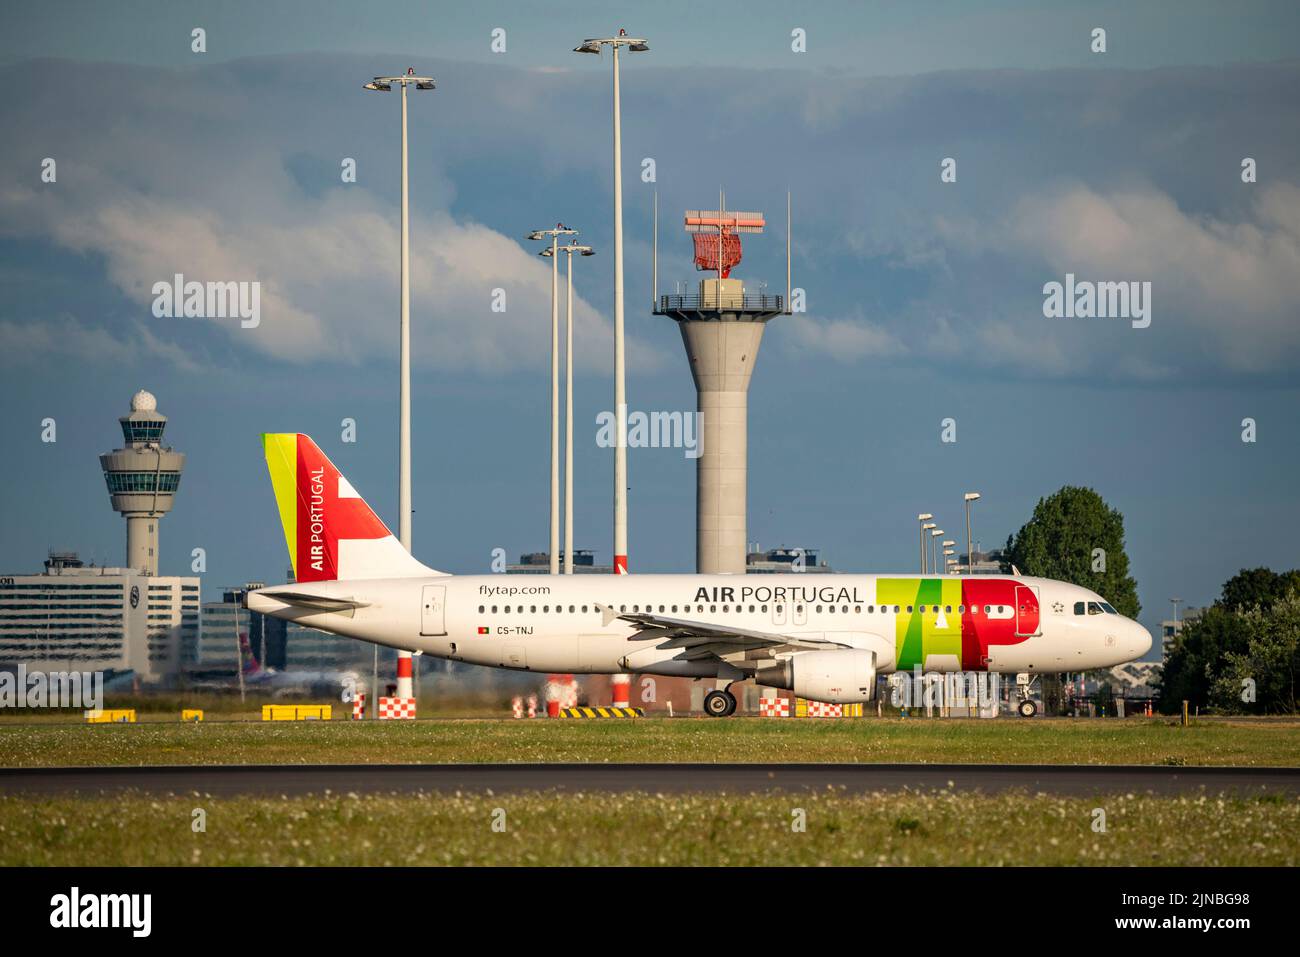 Aeroporto di Amsterdam Shiphol, Ponderbaan, una delle 6 piste, torre di controllo del traffico aereo, CS-TNJ, TAP - Air Portugal Airbus A320-200, in taxi per il decollo Foto Stock